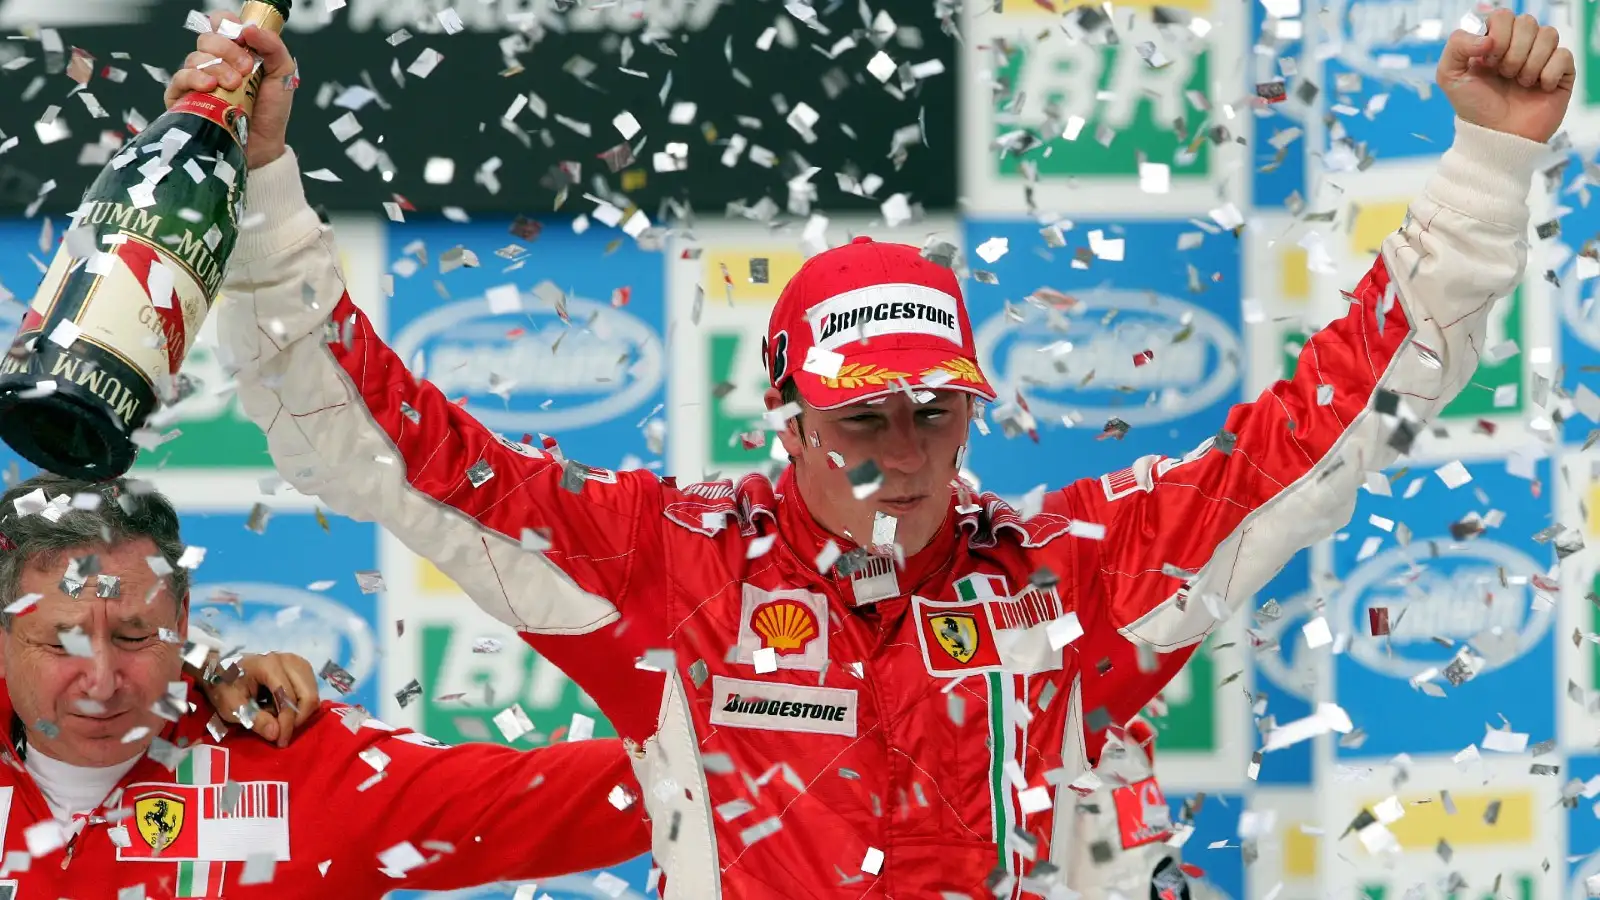 Ferrari's Kimi Raikkonen celebrates the win and his world championship title at the 2007 Brazilian Grand Prix. Interlagos, October 2007.